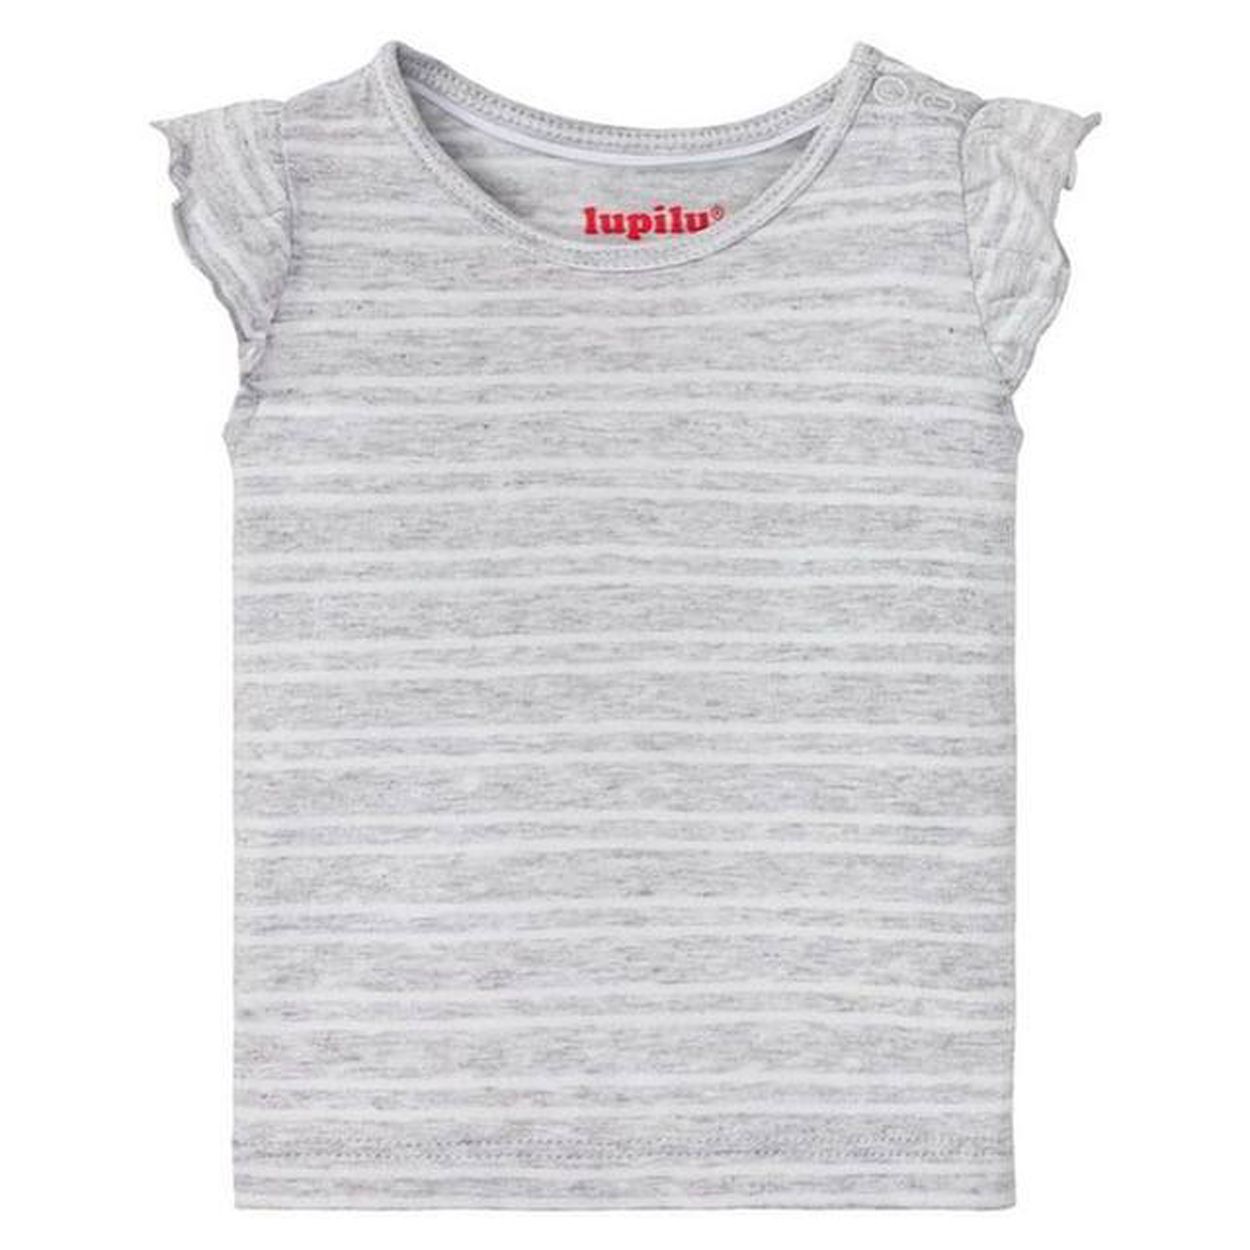 تی شرت نوزادی لوپیلو مدل راه راه -  - 1